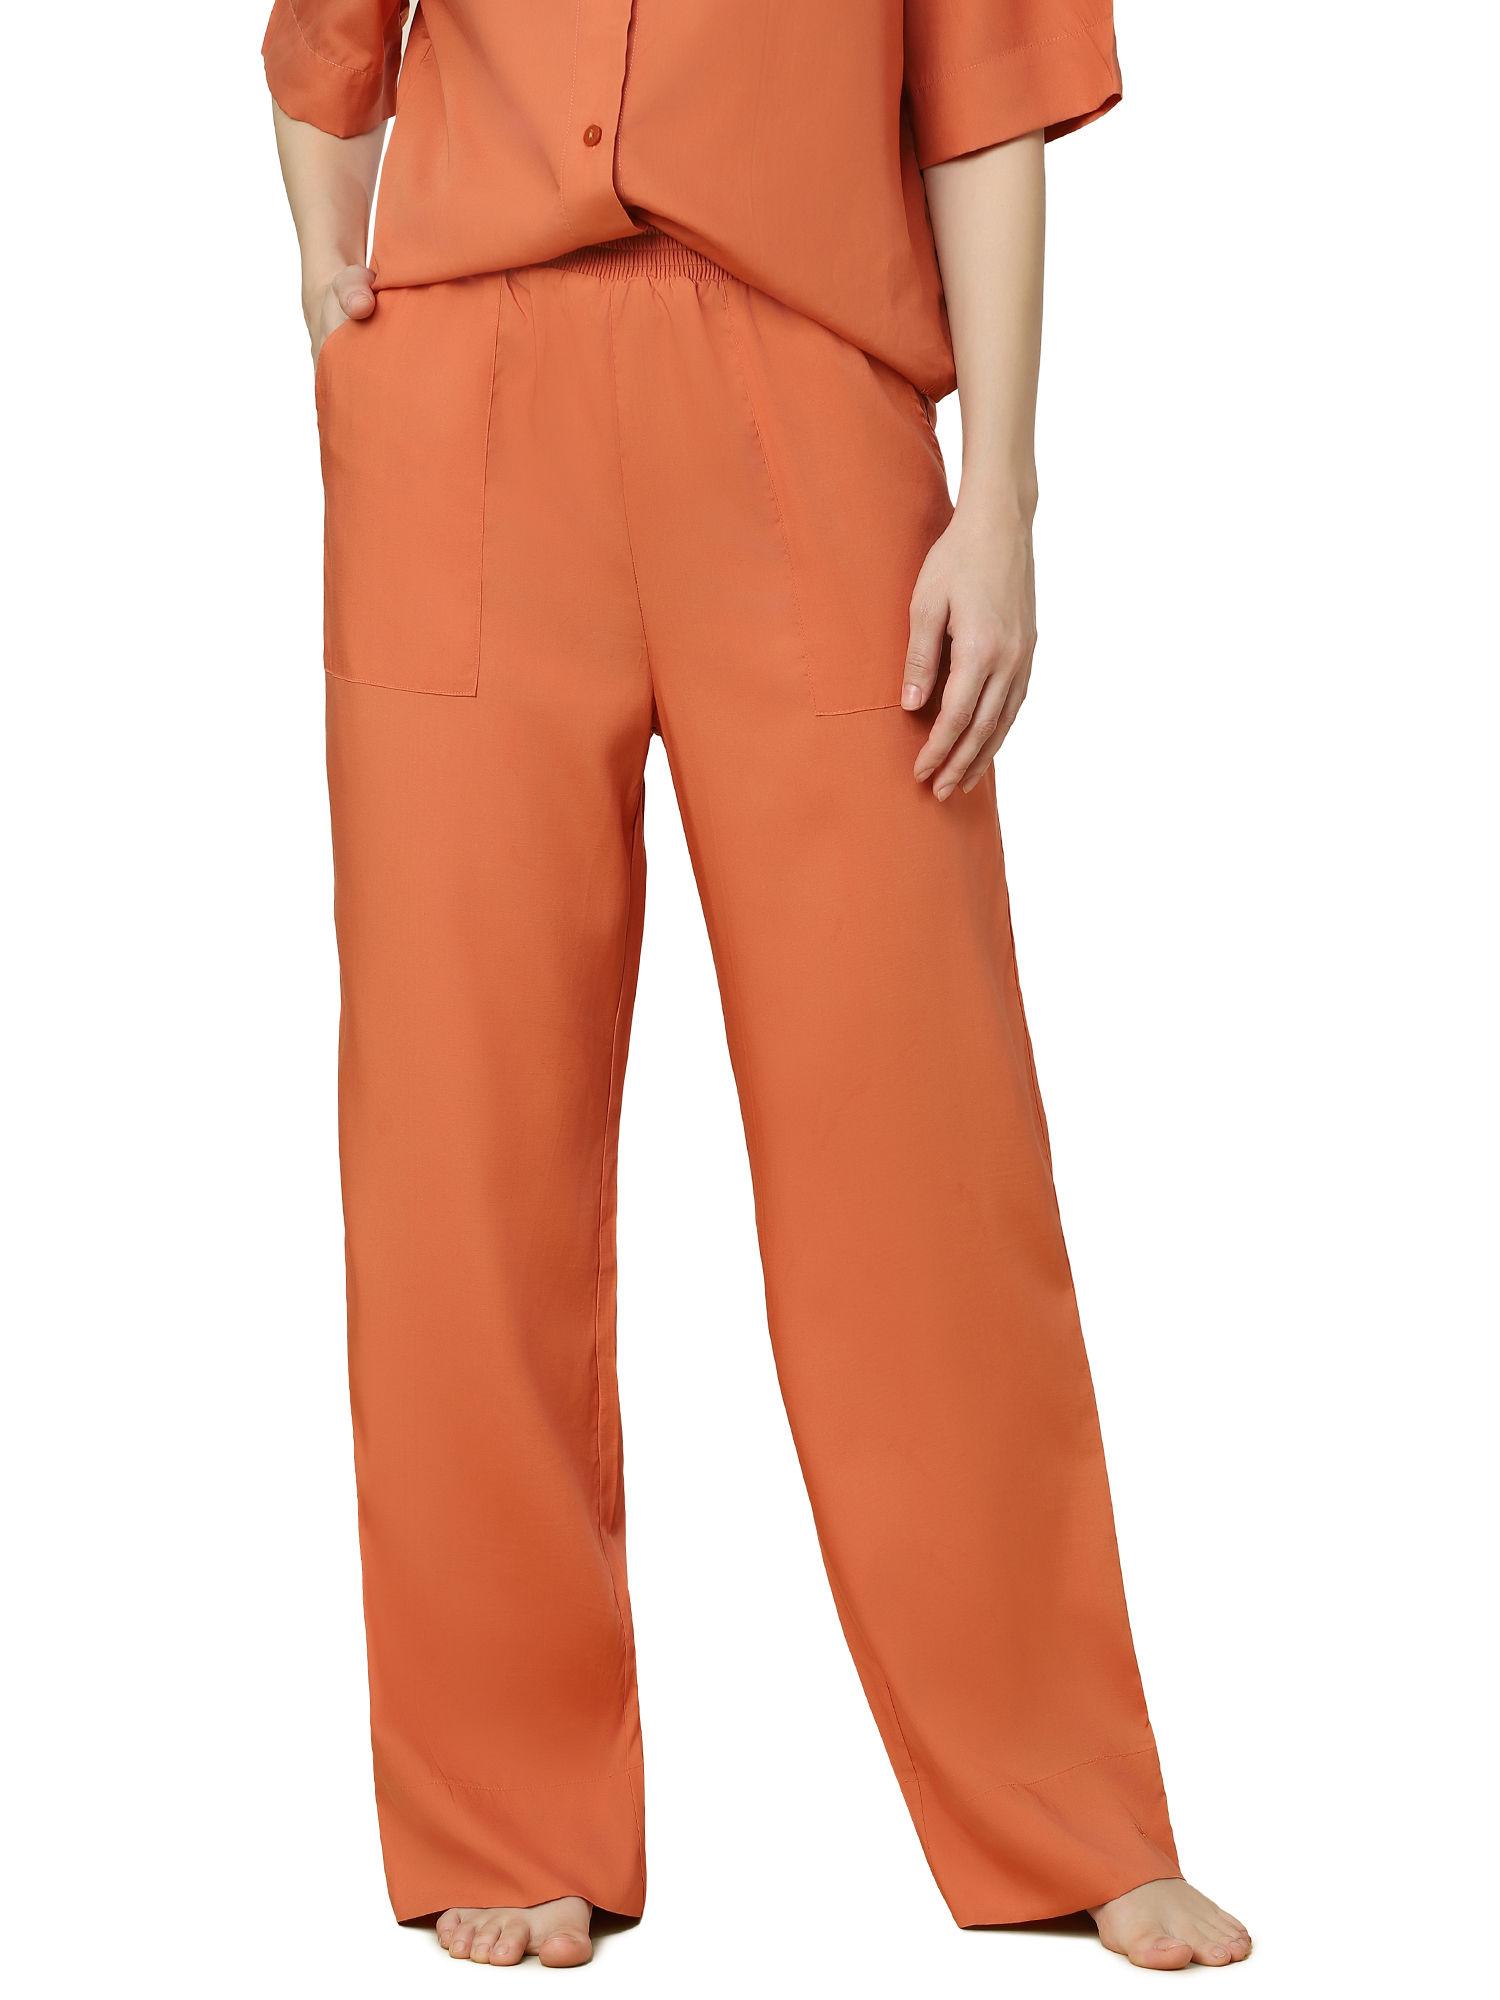 boyfriend mywear woven trouser - orange